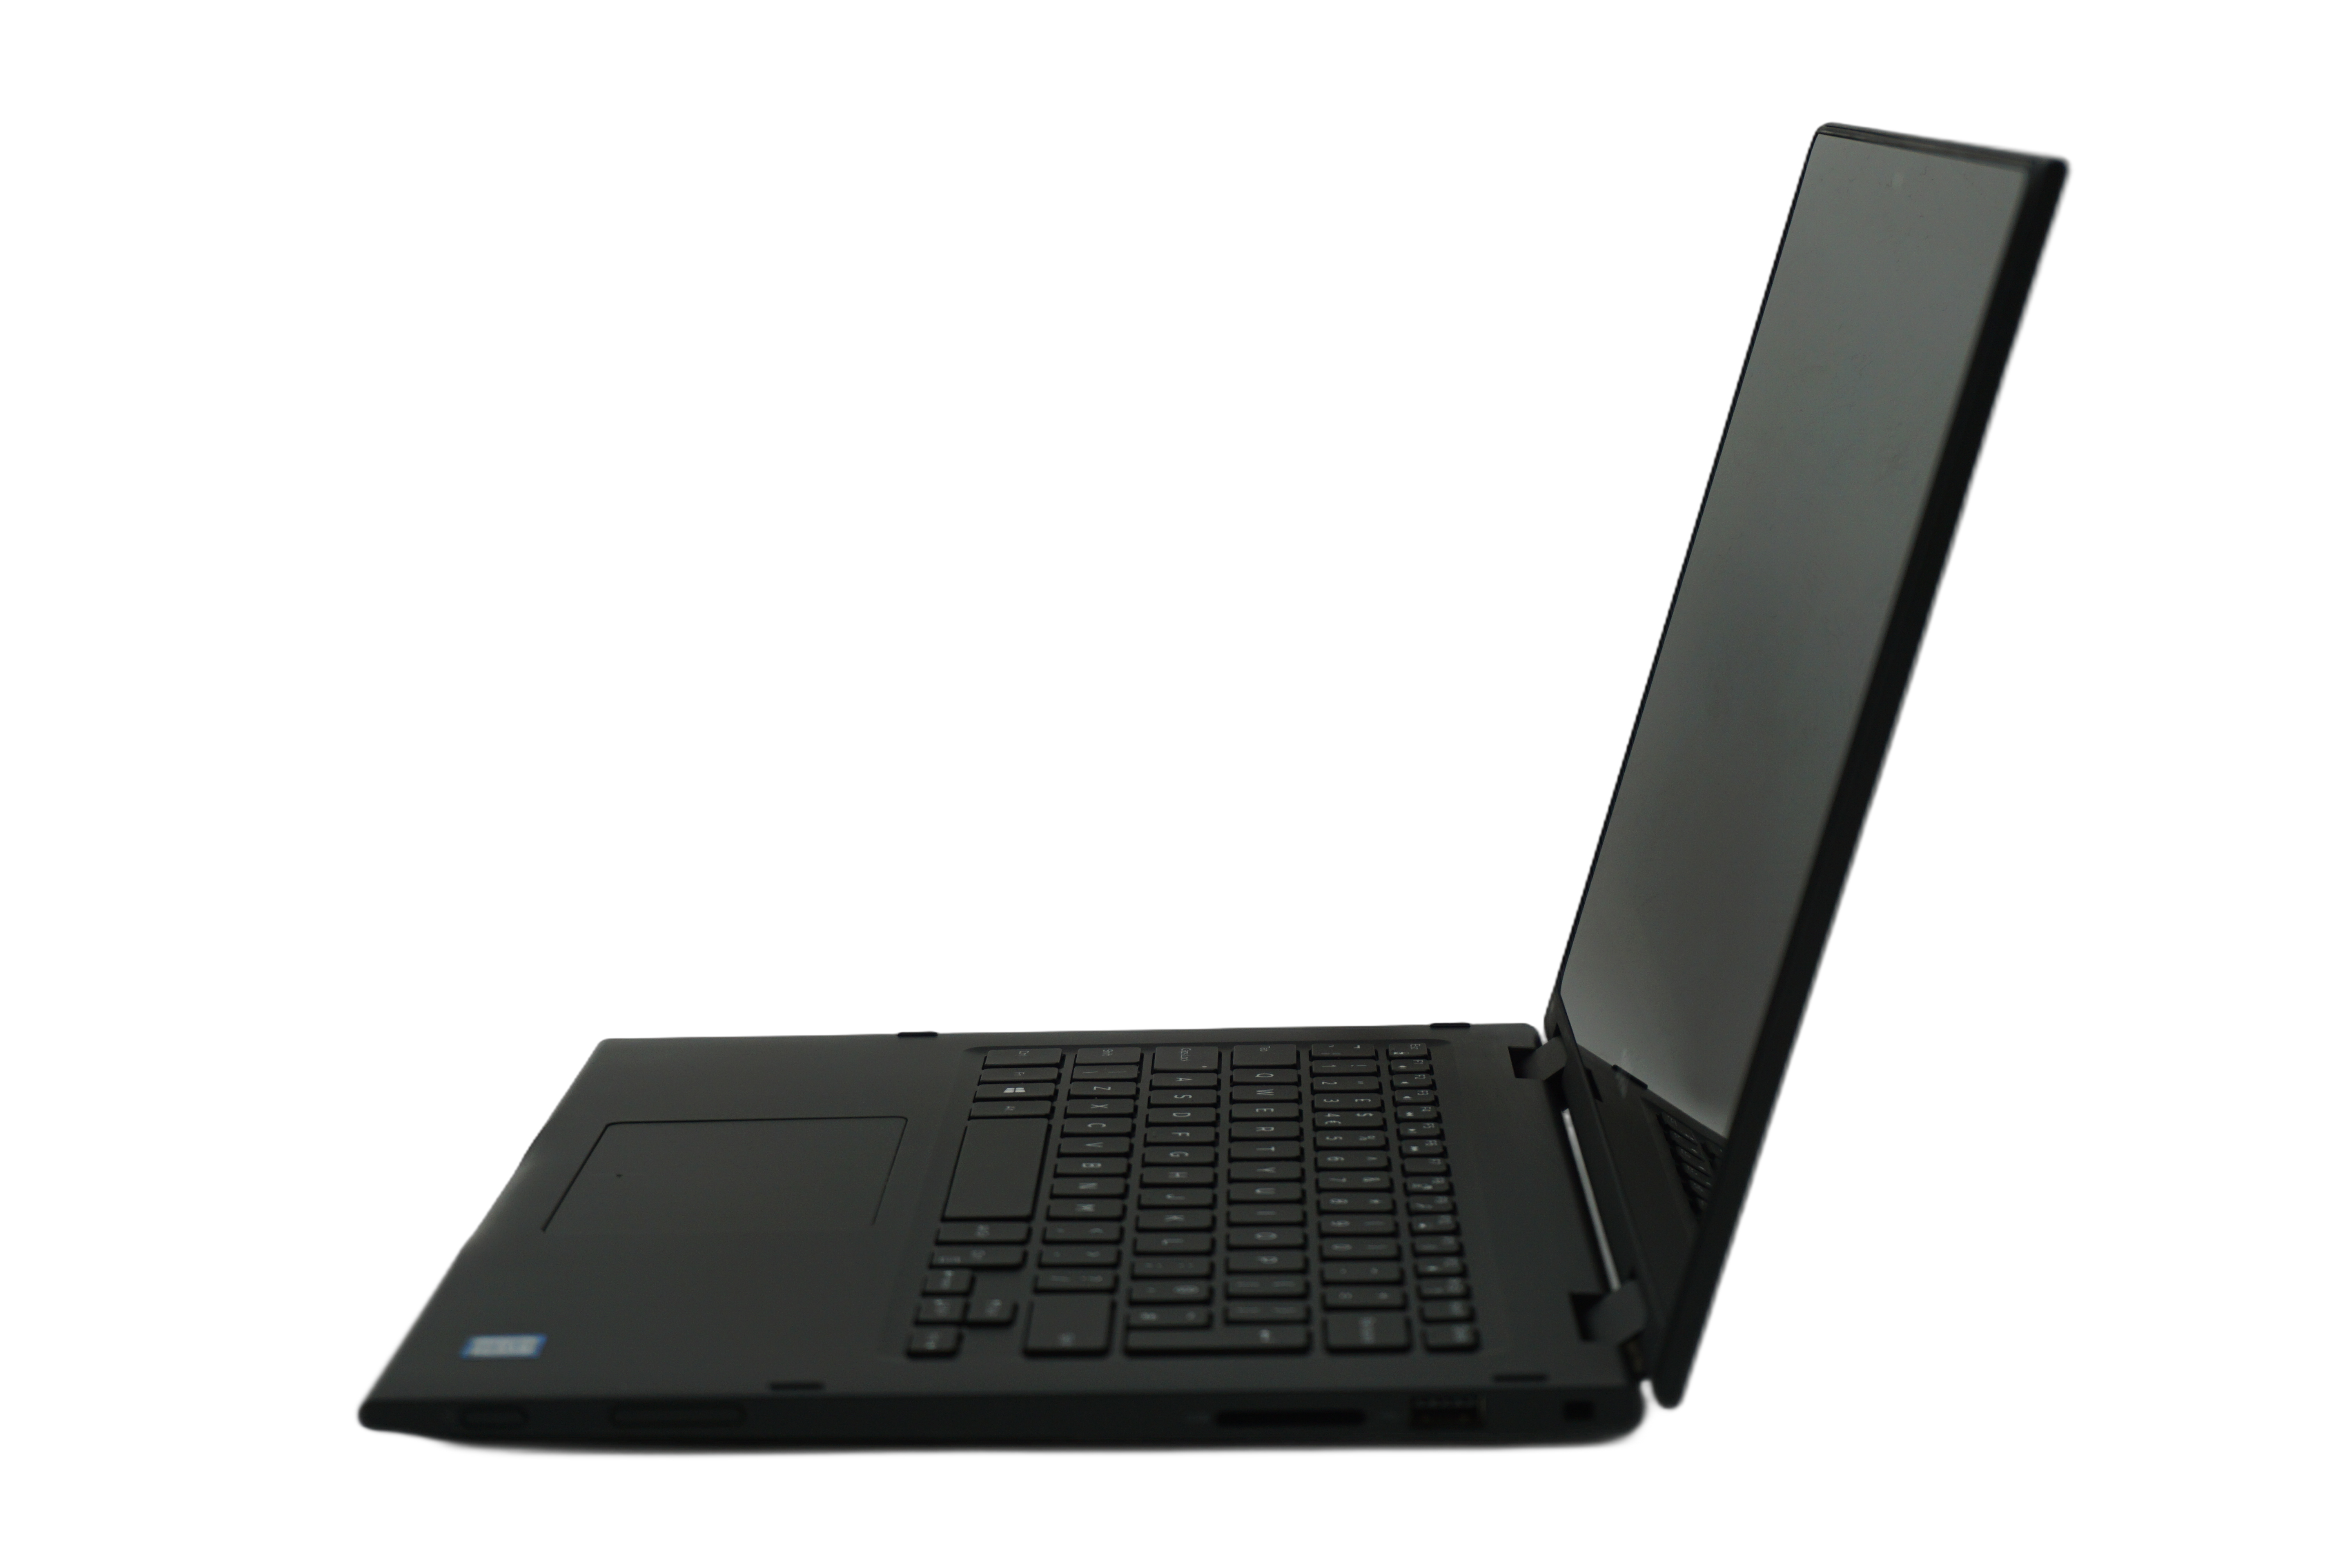 Dell Lattitude 3390 2-in-1, 13.3" Core i3 7th Gen, 8GB RAM,256GB SSD